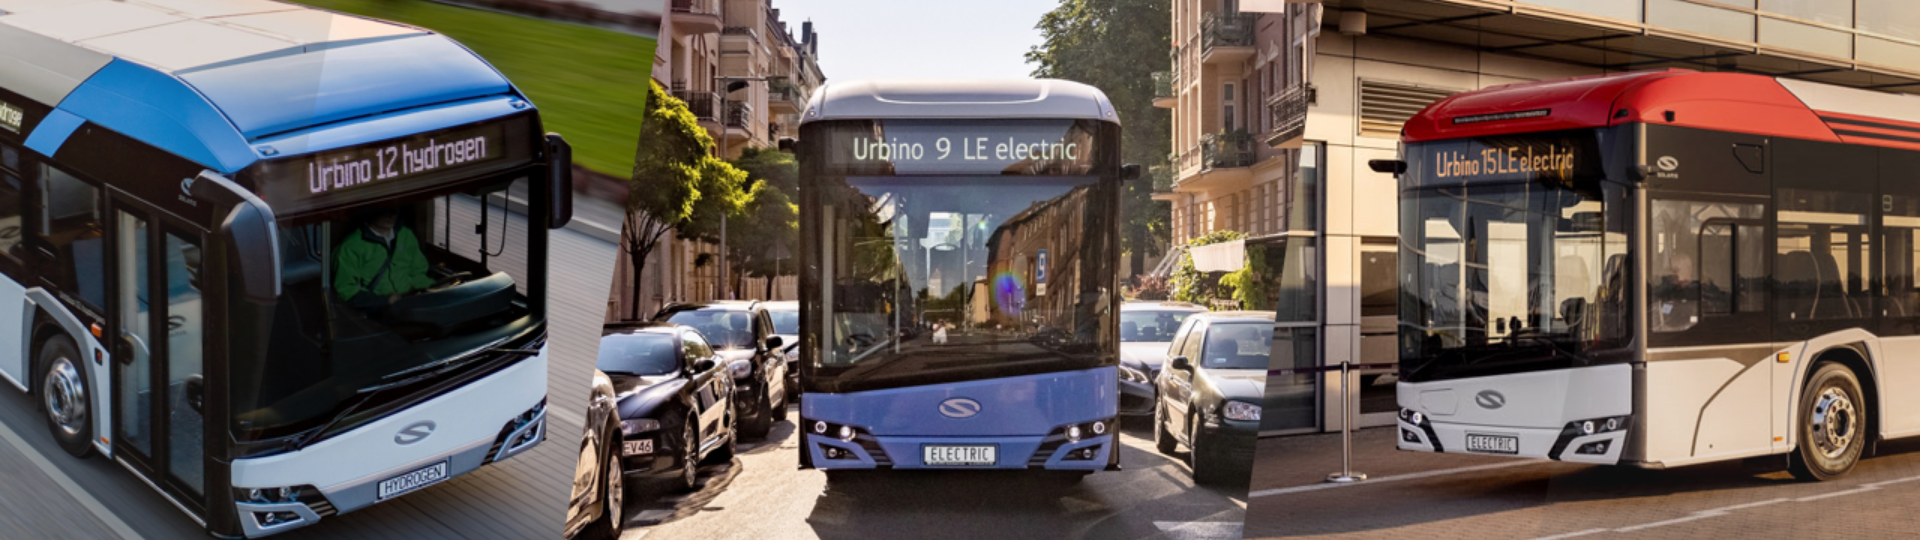 Transexpo Kielce 2021: Solaris displays four zero-emission buses